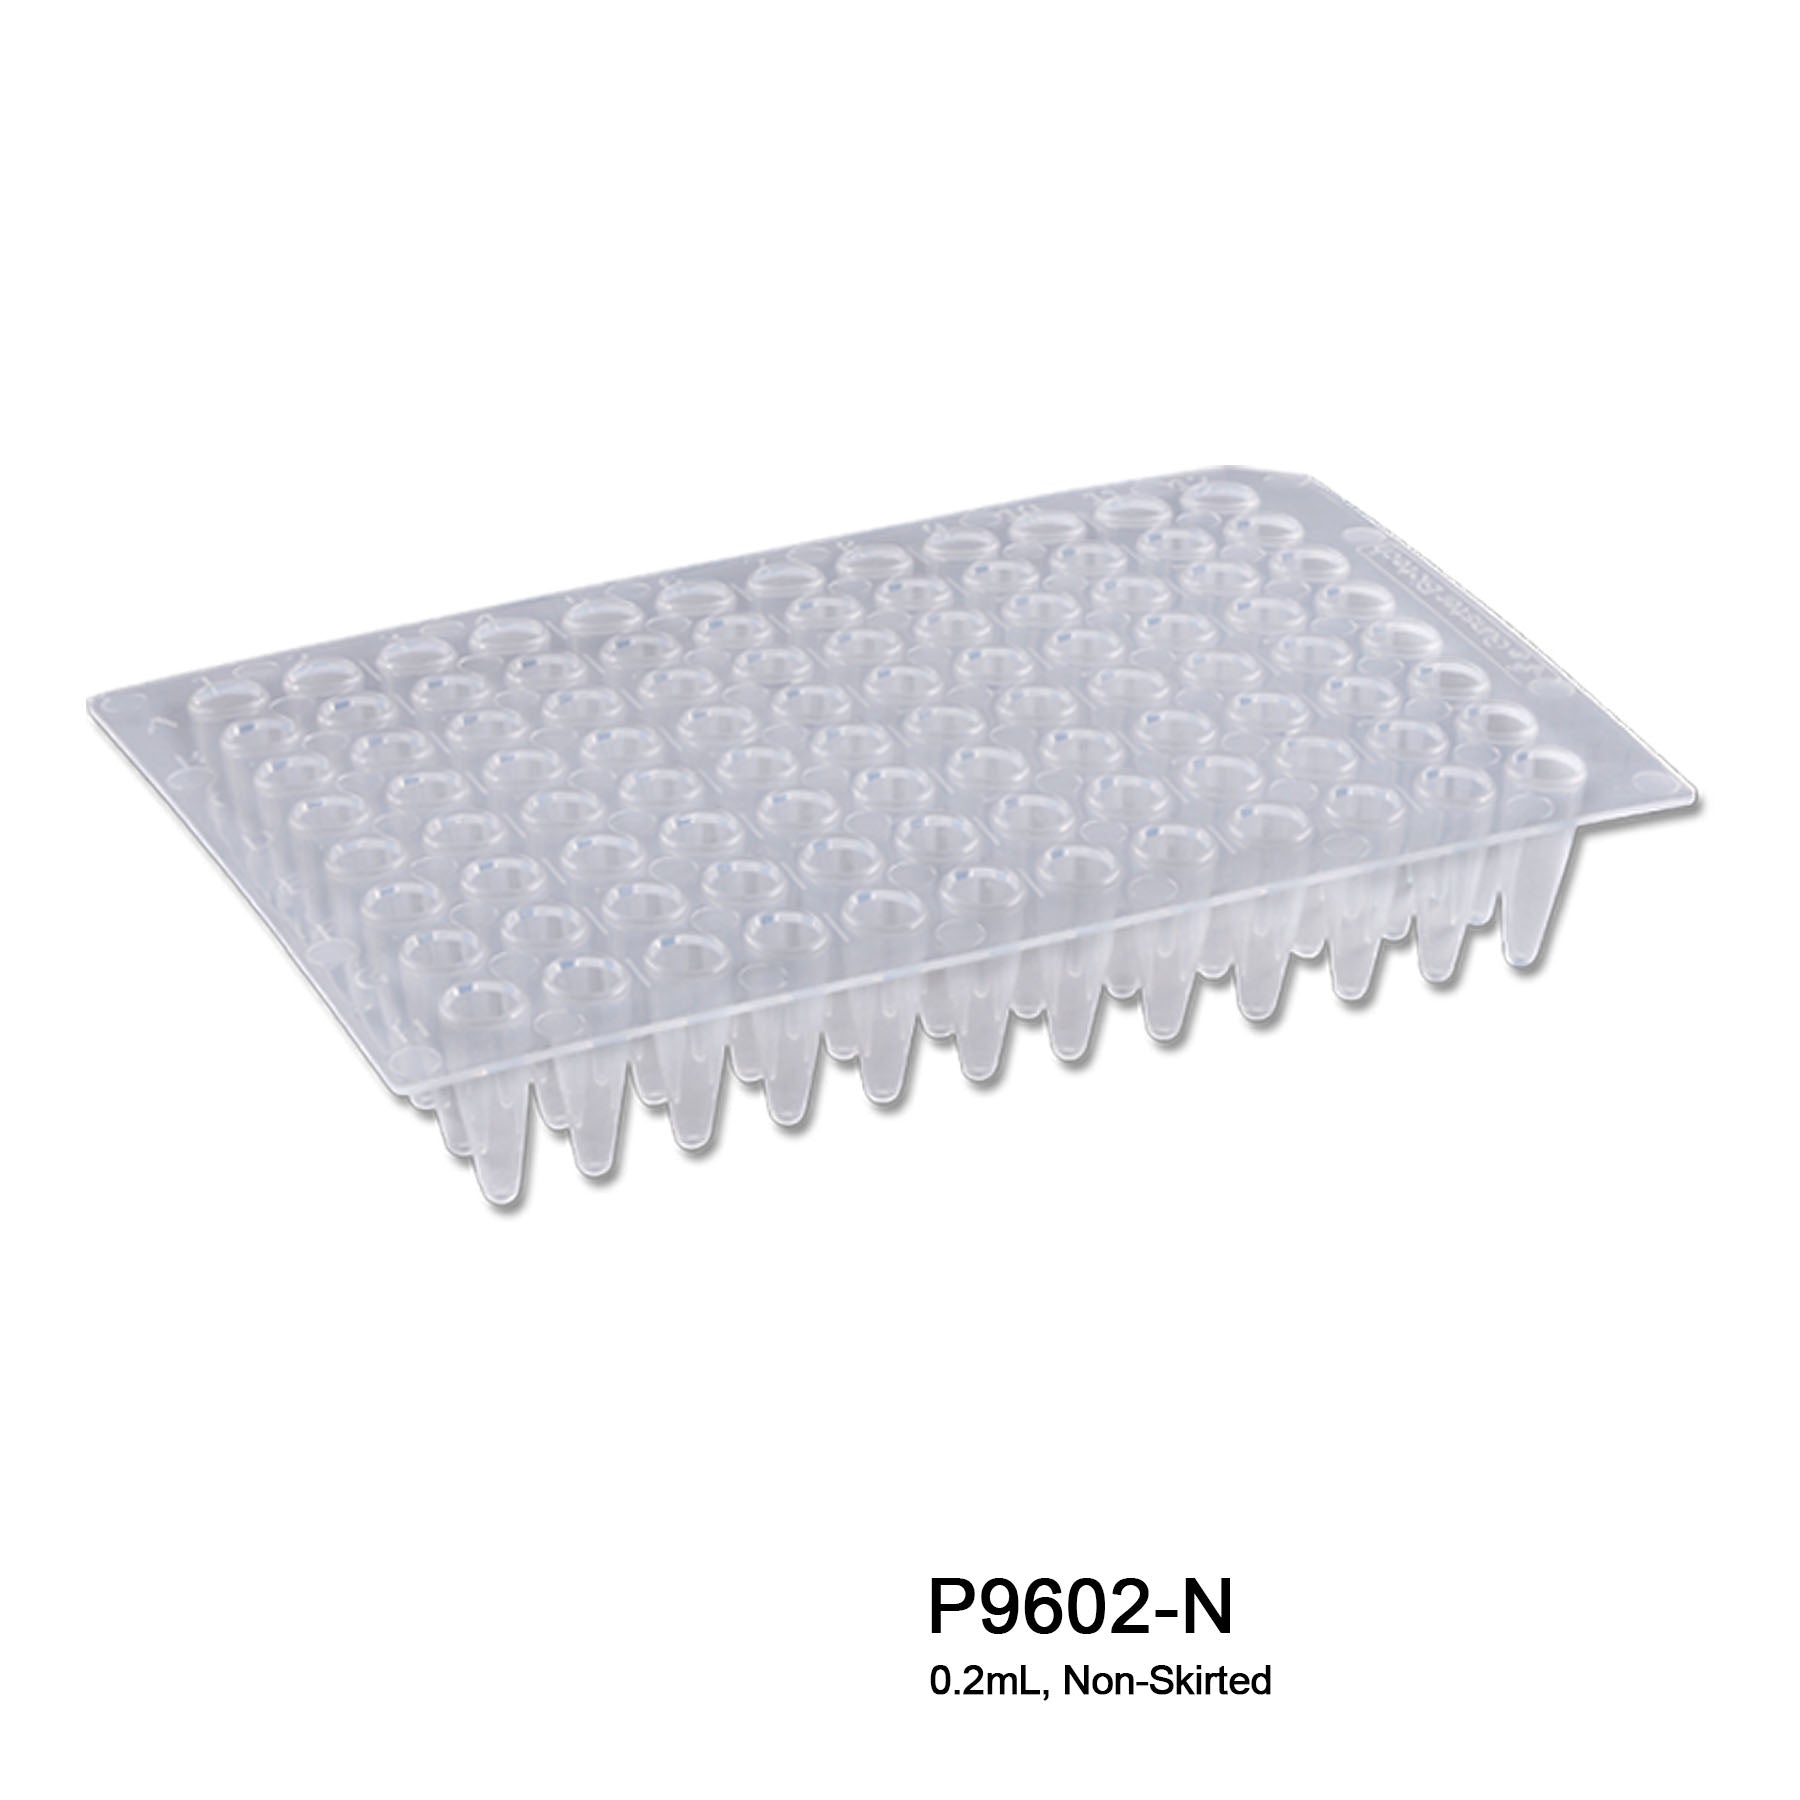 MTC Bio P9602-N, PCR Plates, Standard 96 Well x 0.2ml, Non-Skirted, 50/pk